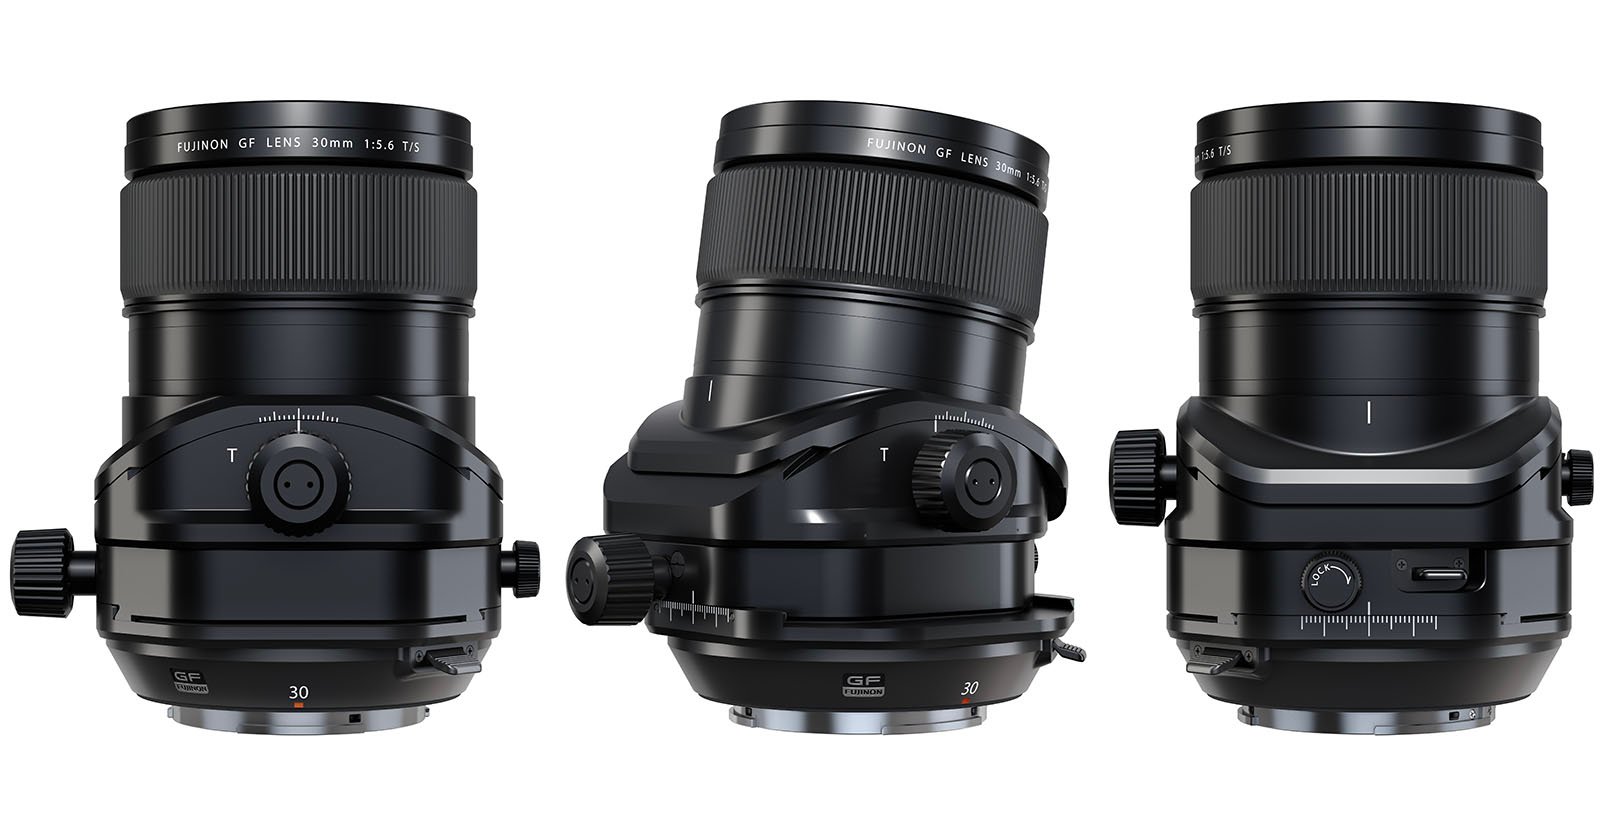  fuji 24mm 110mm tilt shift lenses offer 